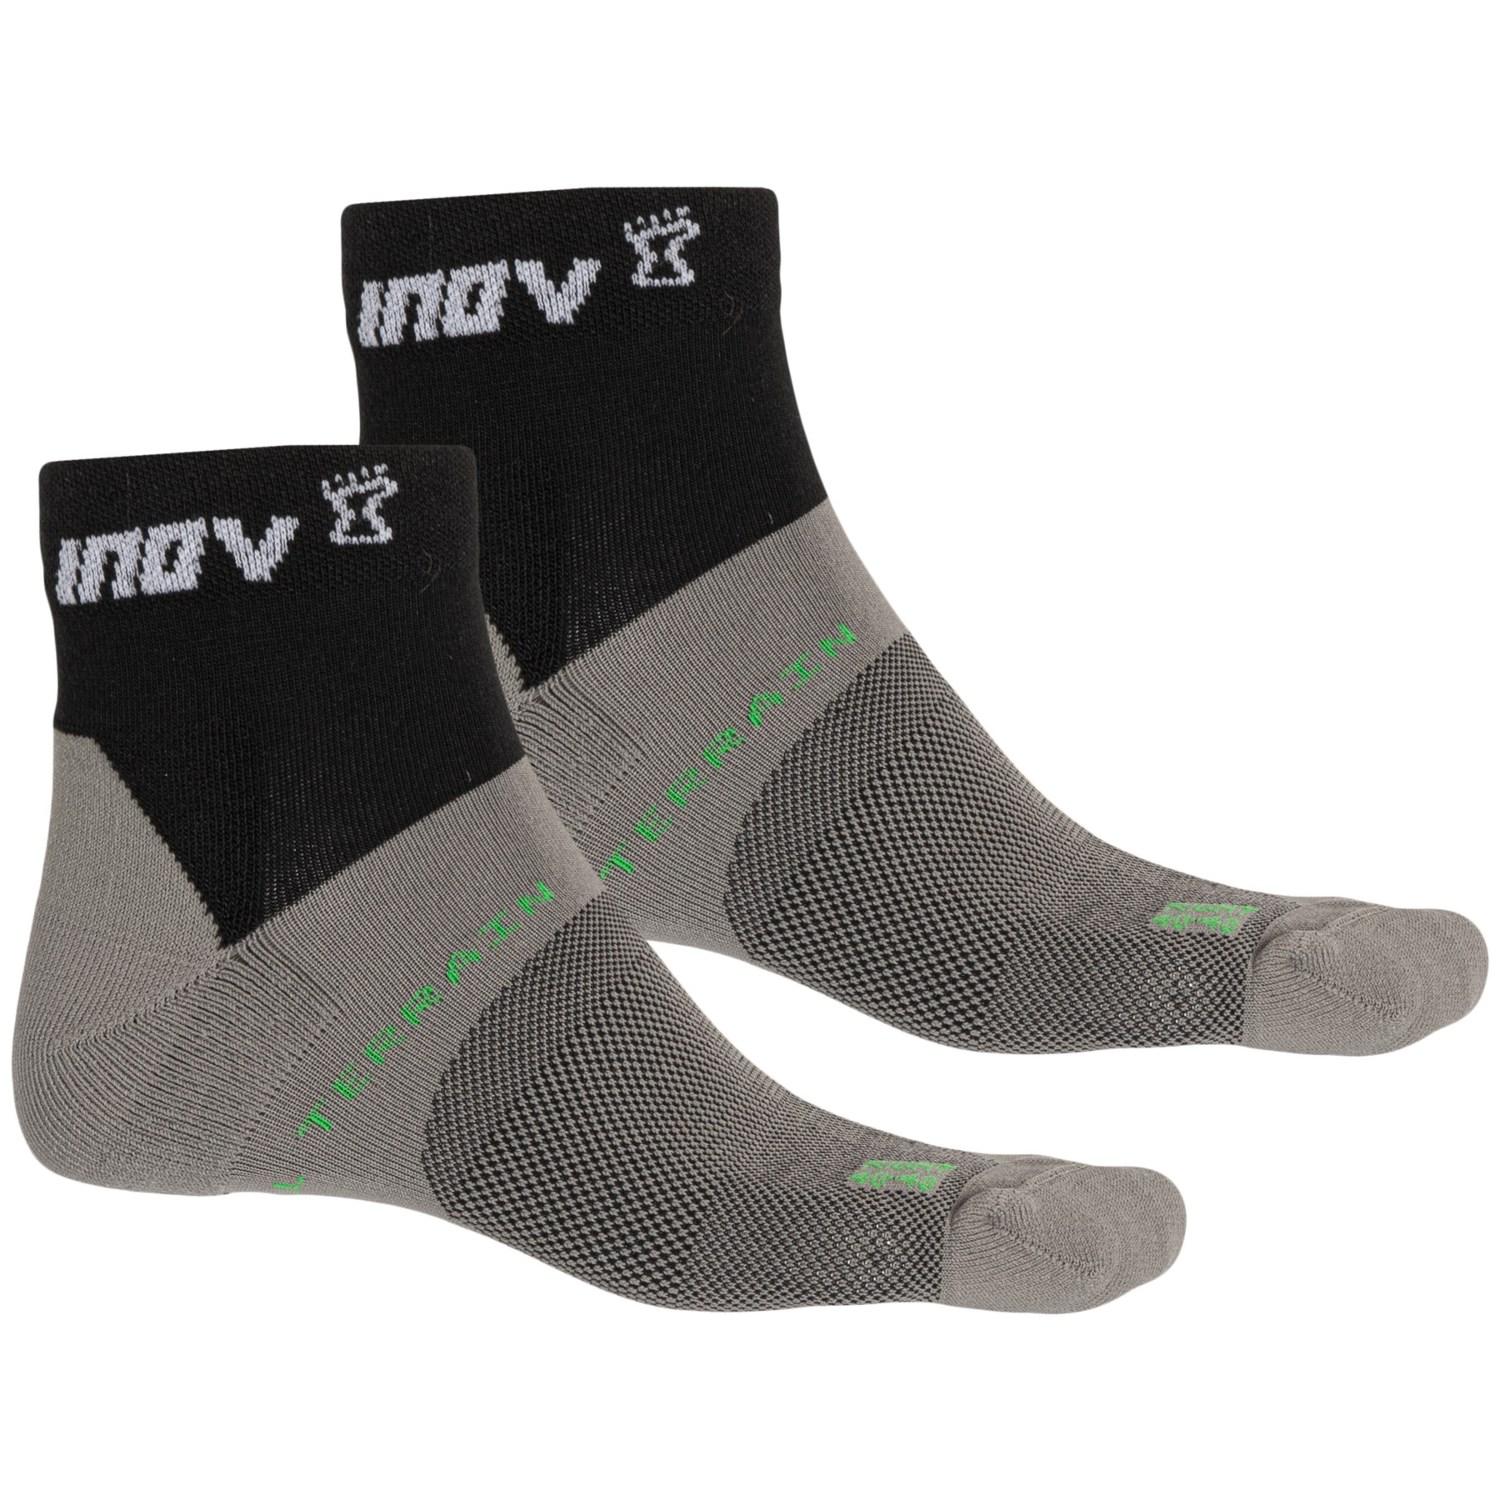 inov8 running socks